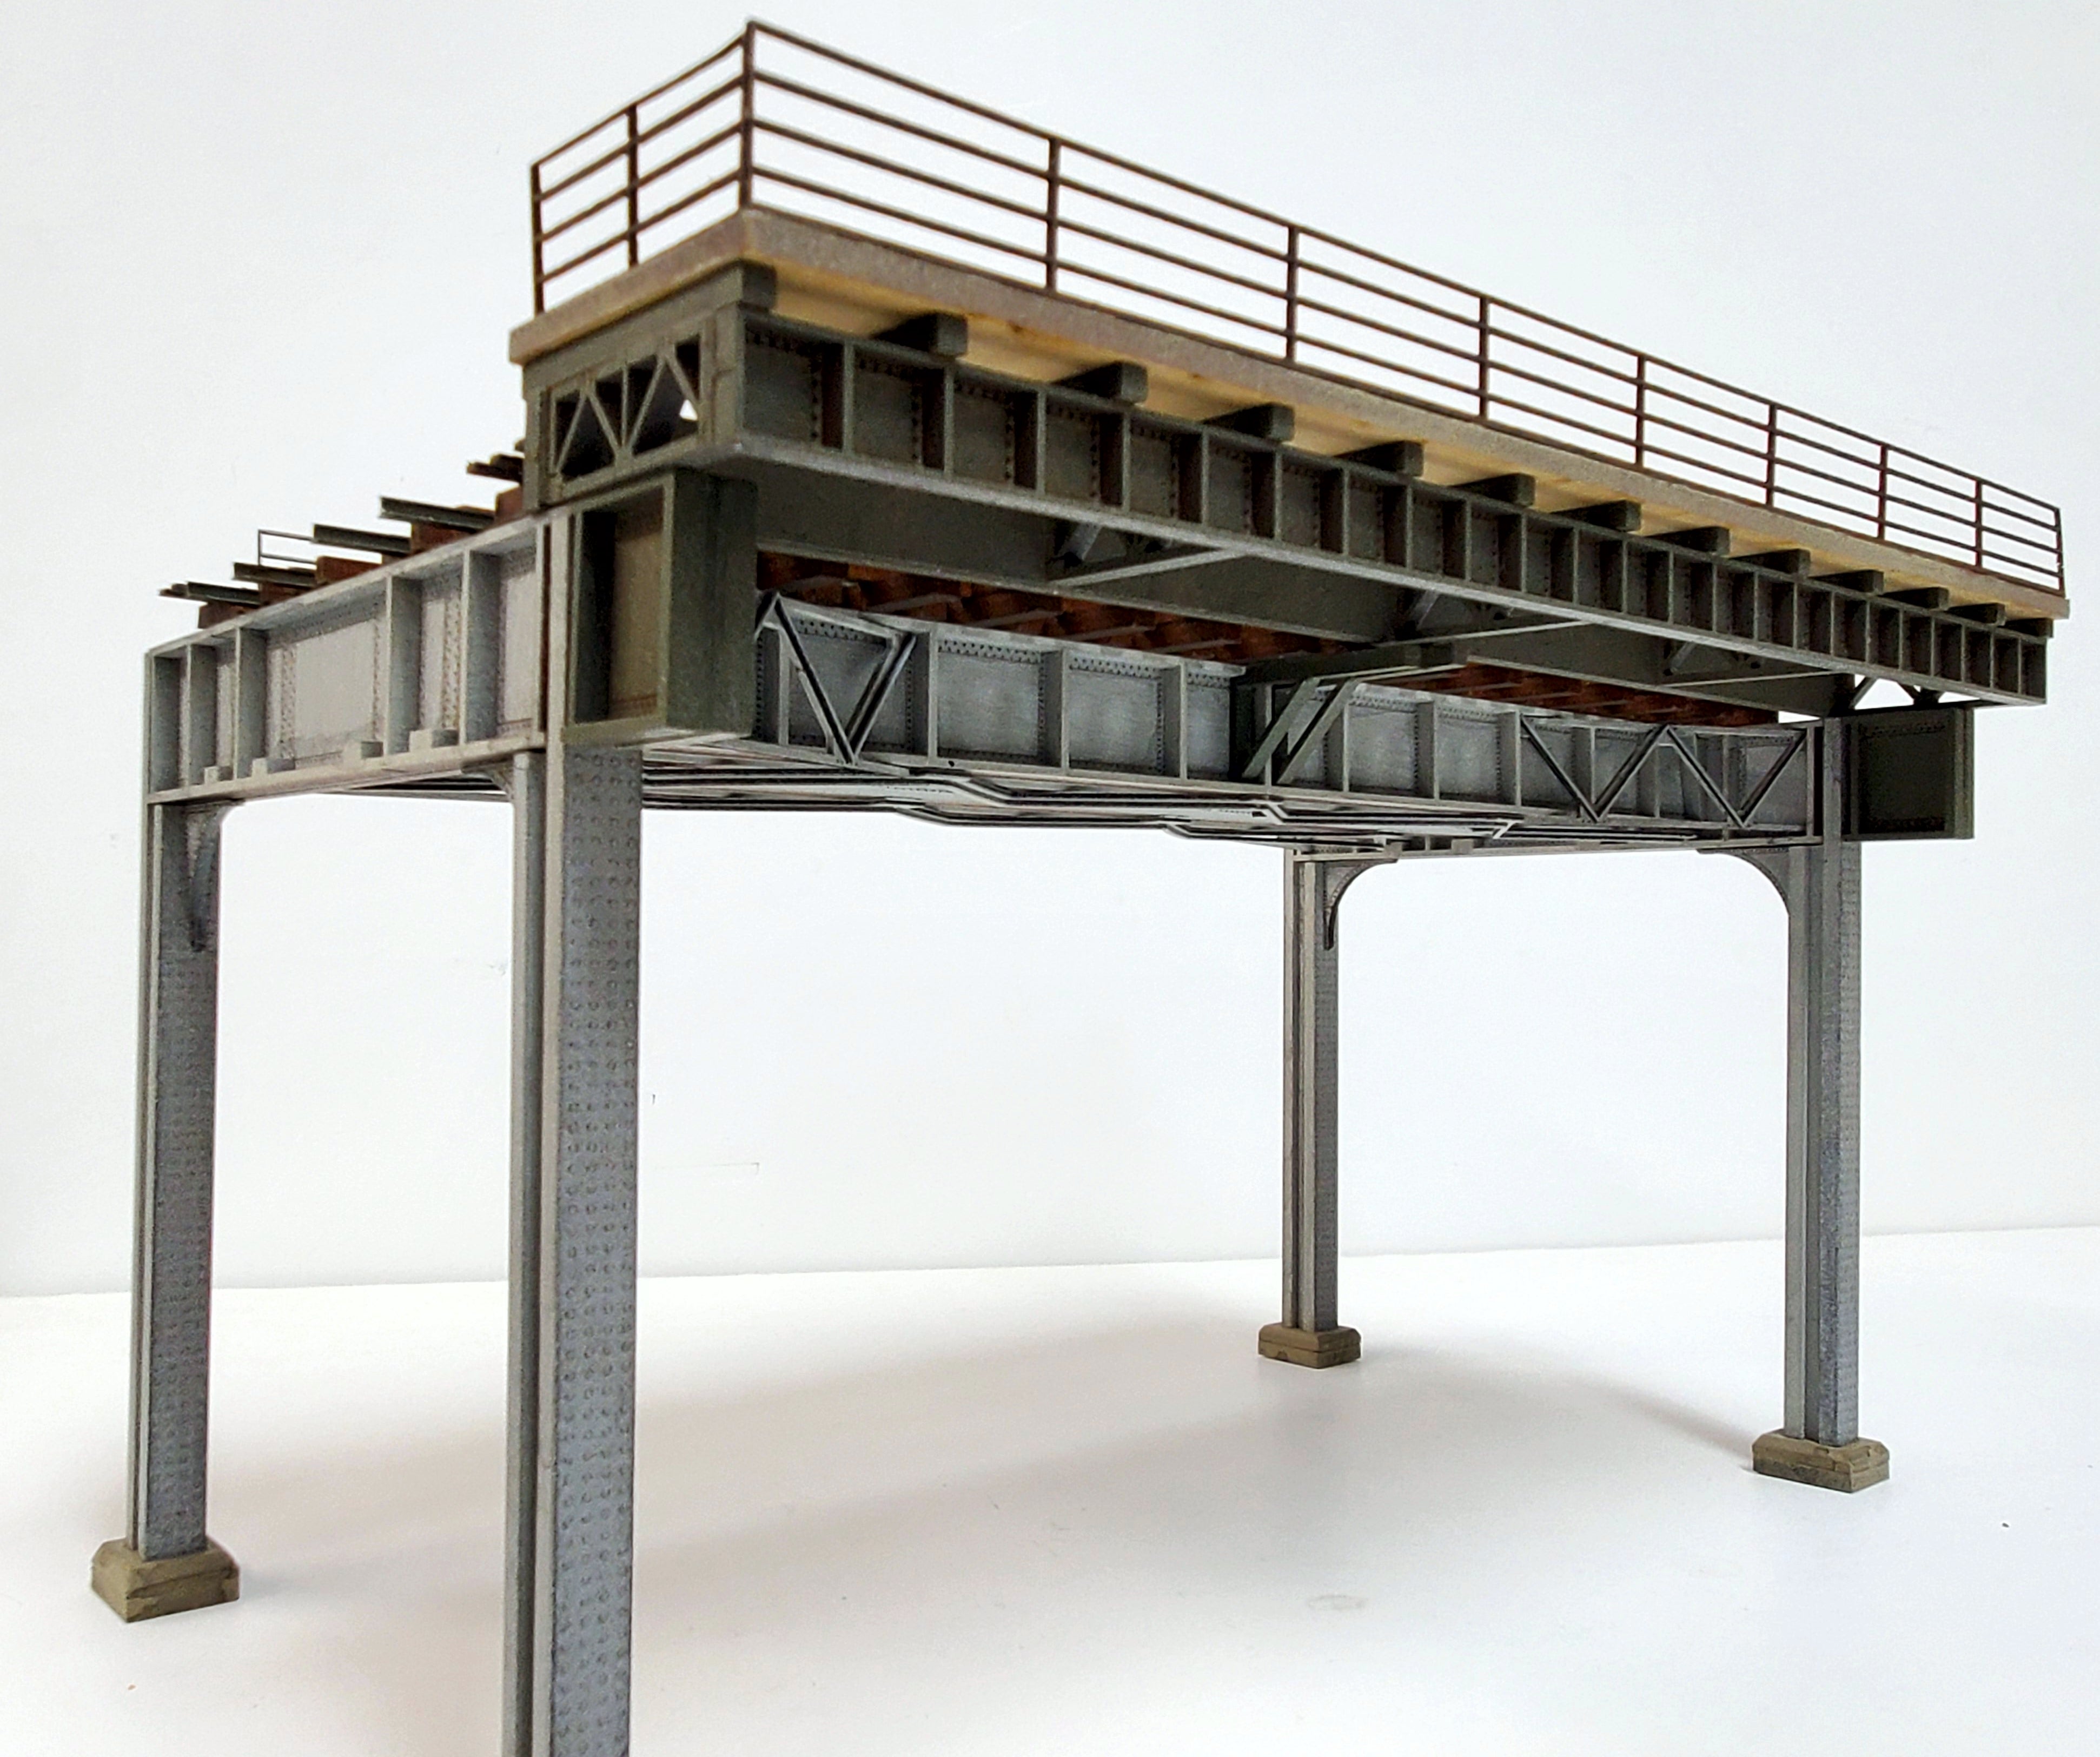 HO Elevated Station Platform - Open Top Concrete Deck - ITLA